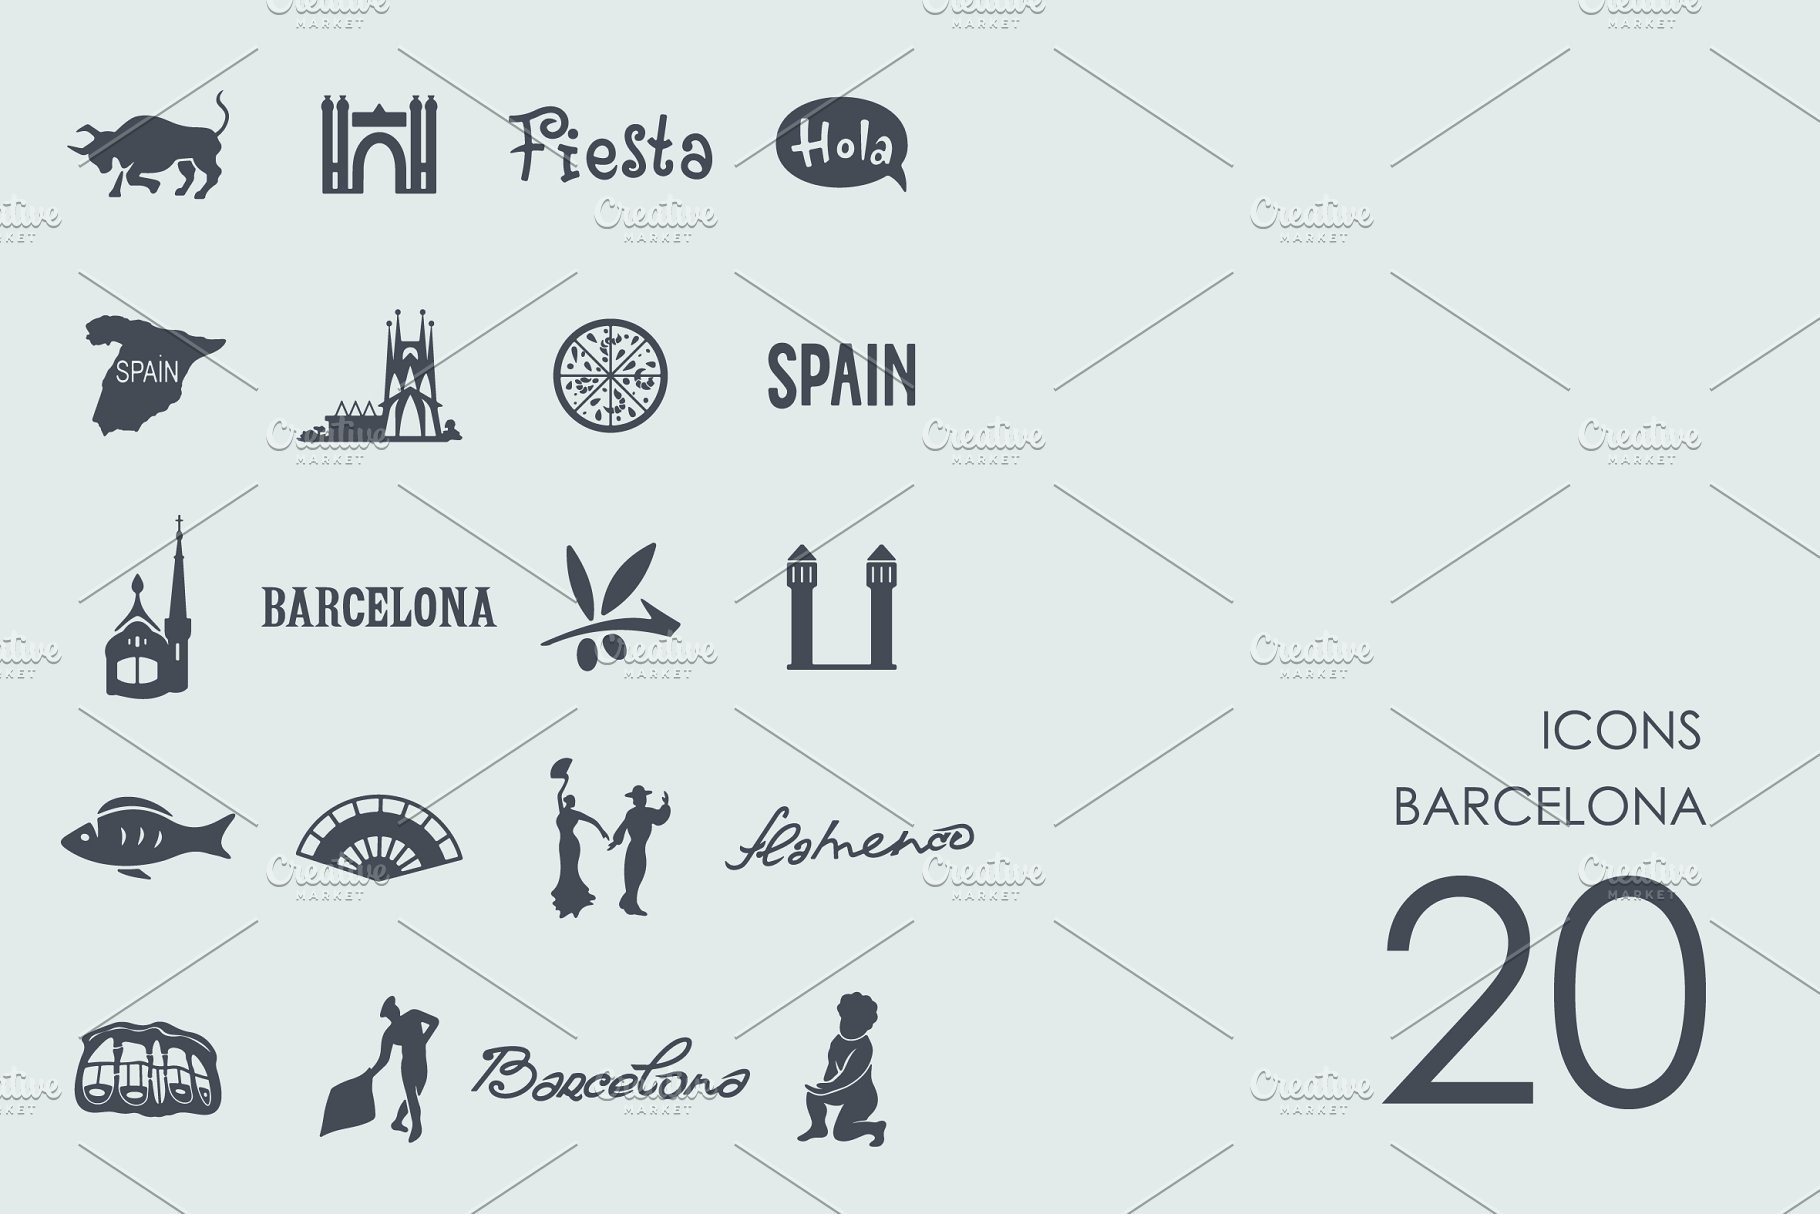 巴塞罗那图标 Barcelona icons #91438